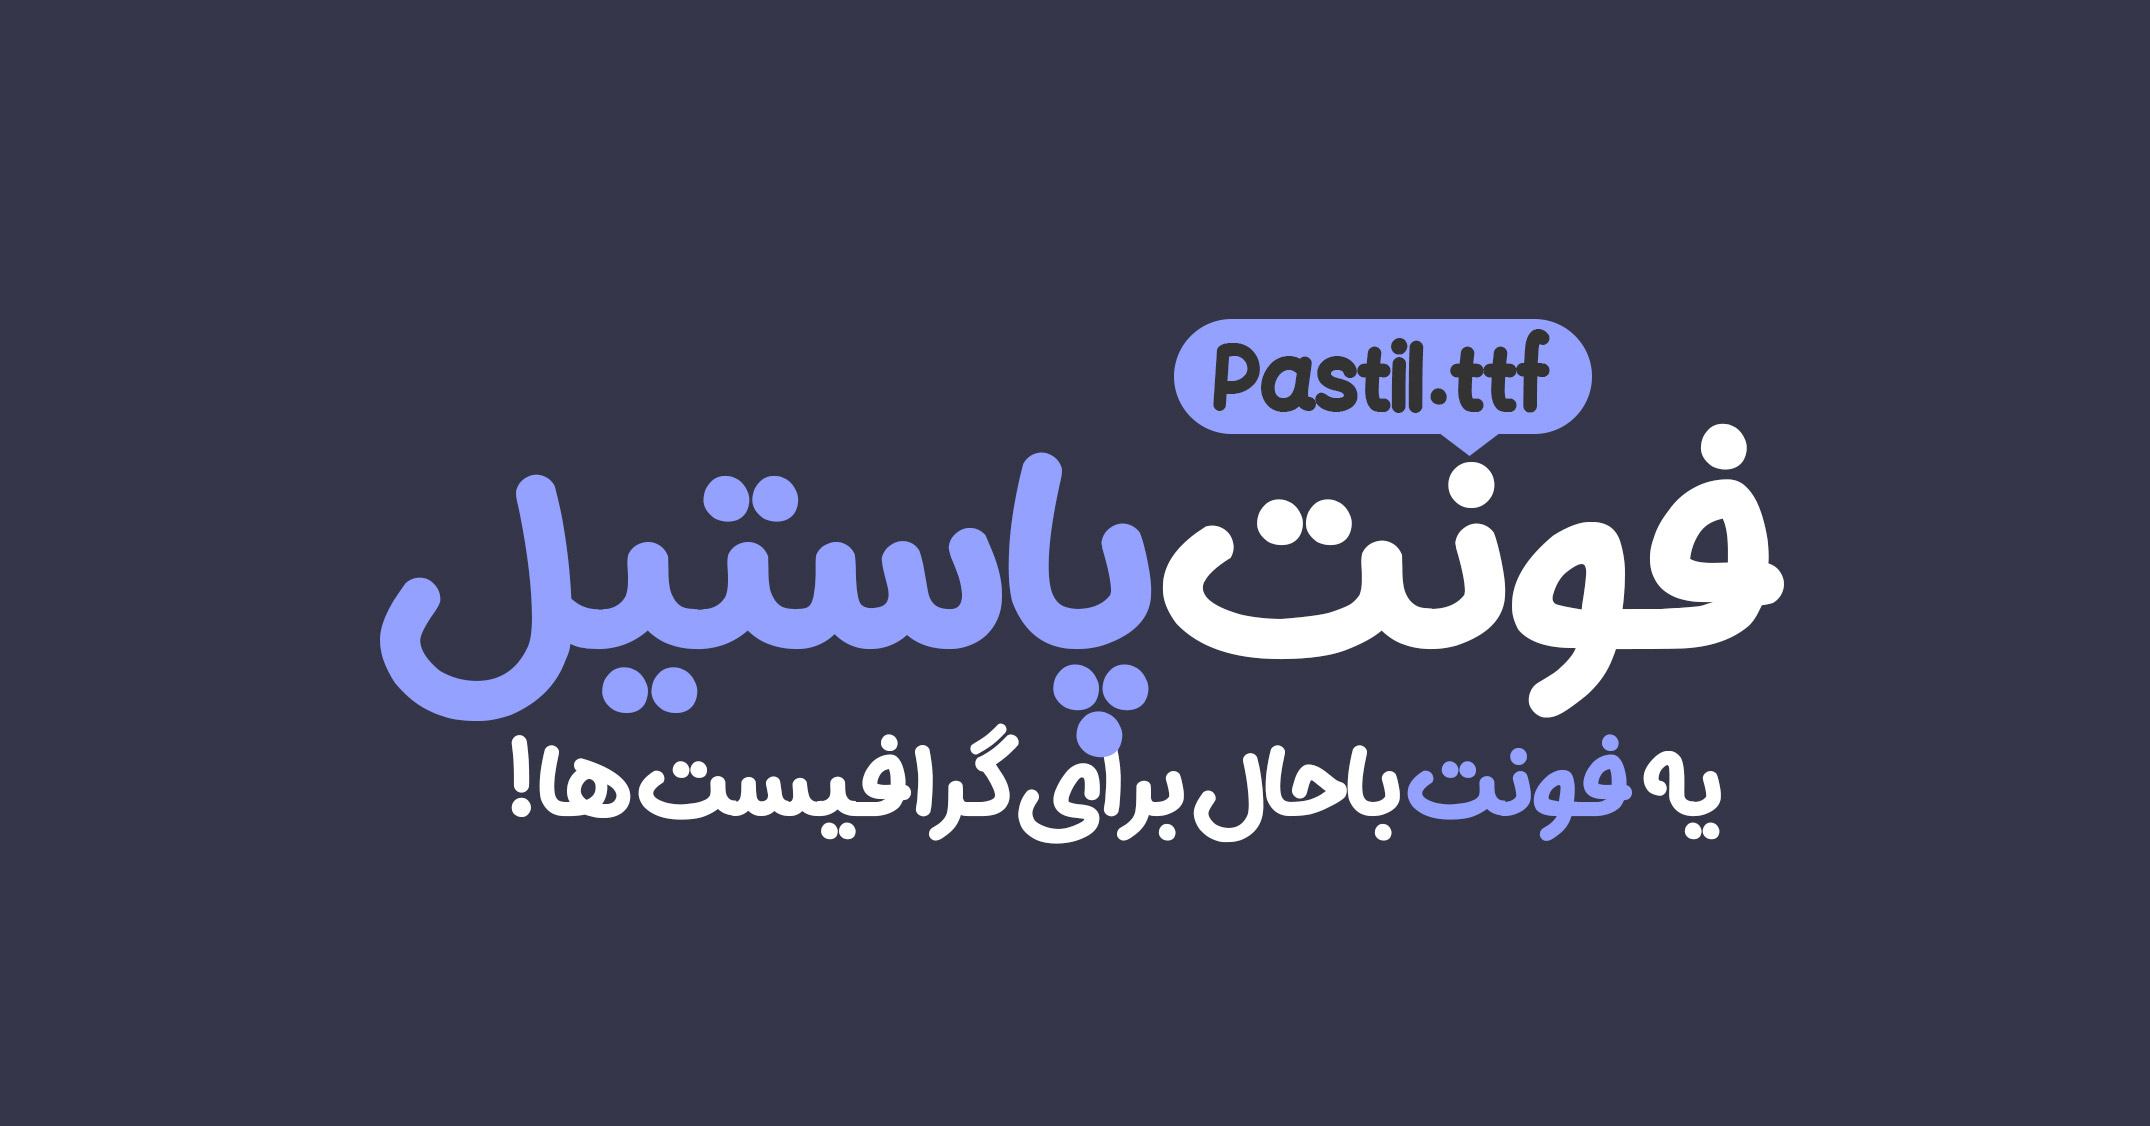 دانلود فونت فارسی جدید پاستیل